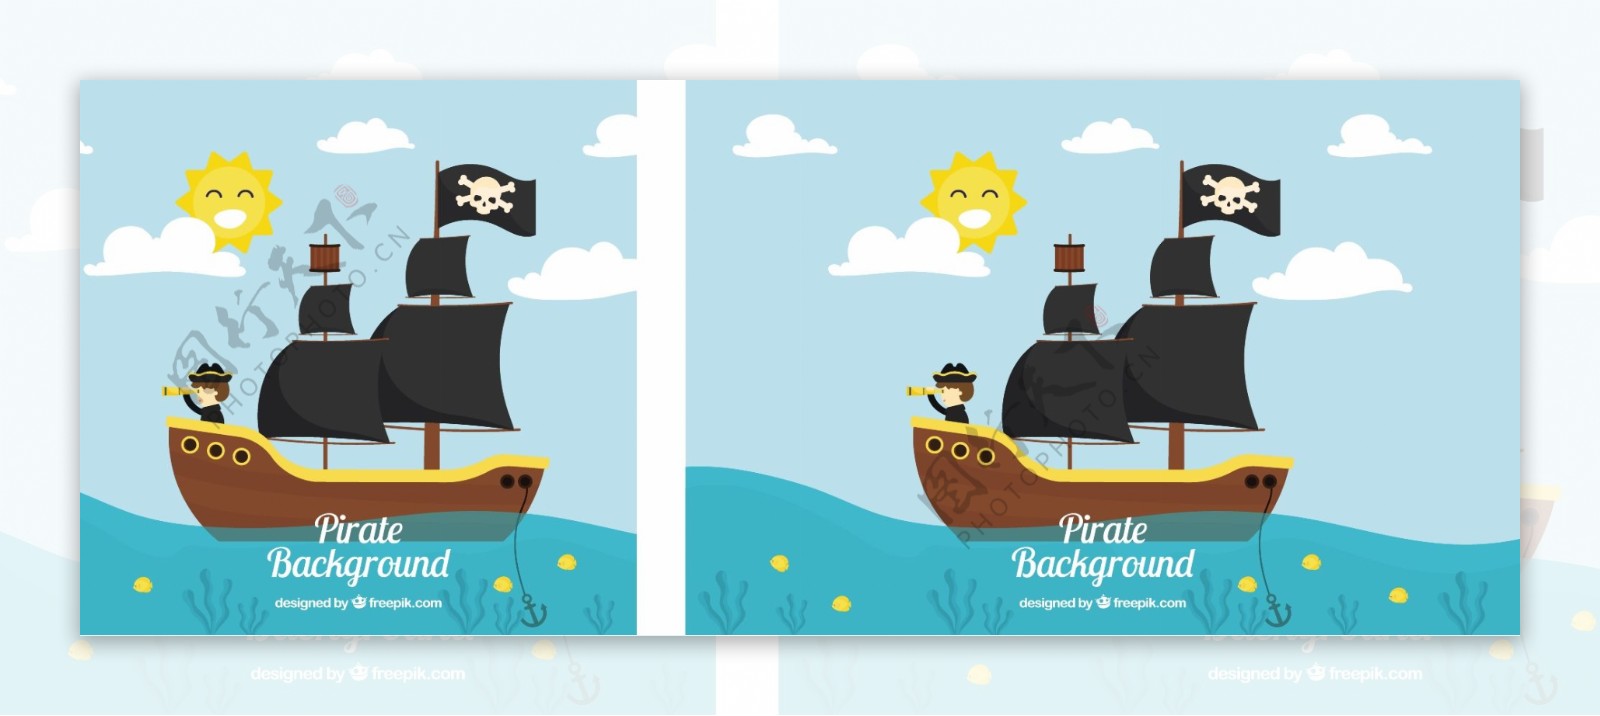 大海蓝天风景背景与海盗船